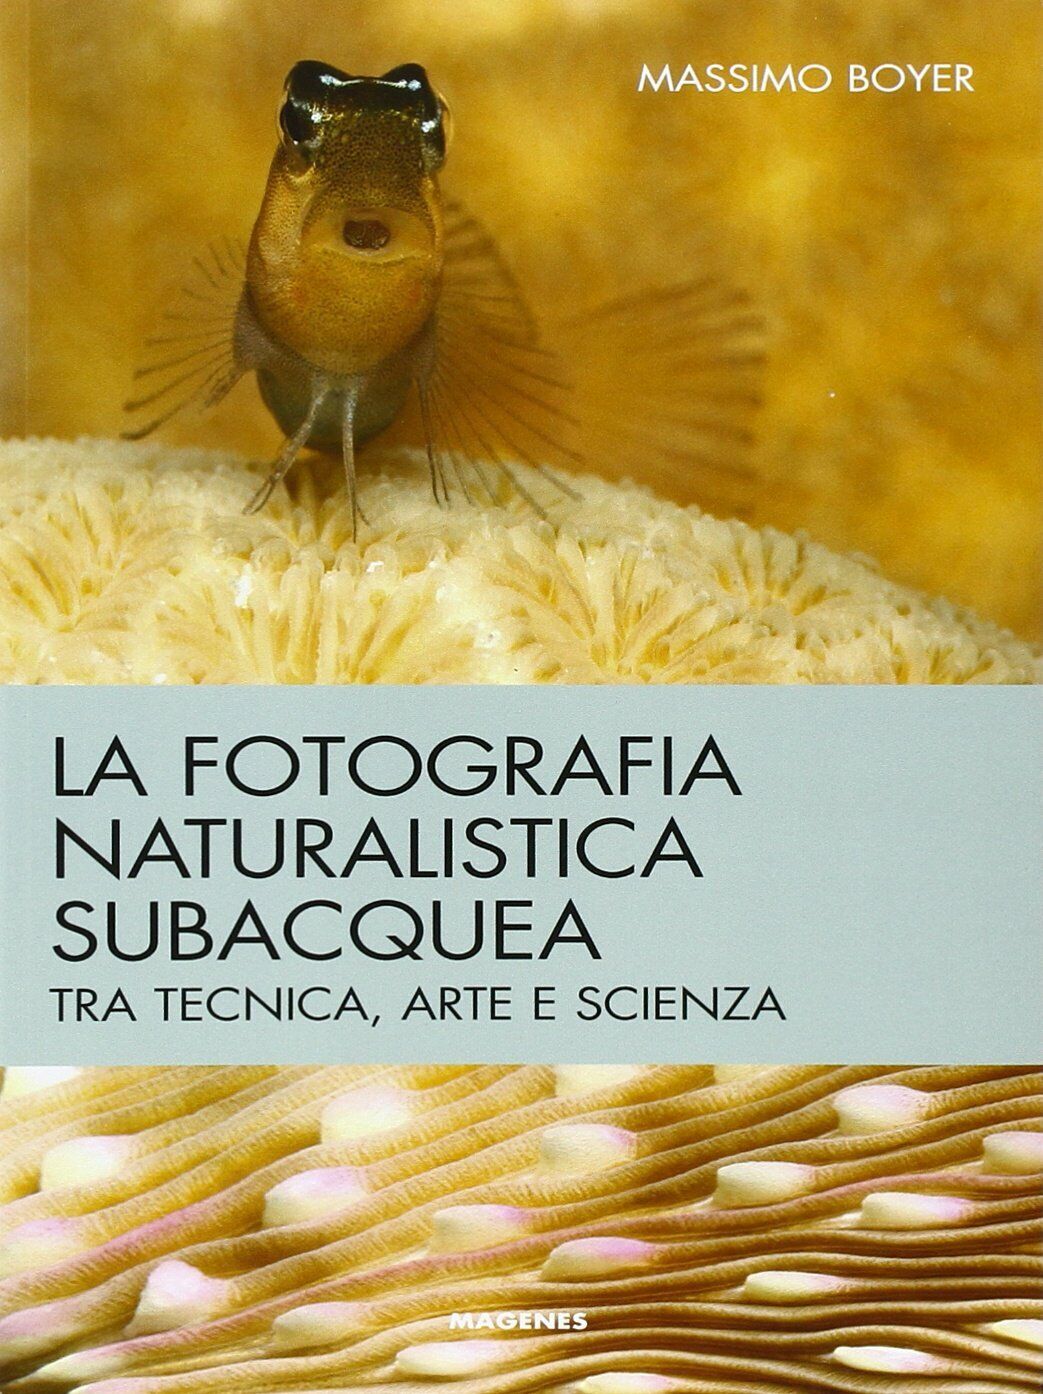 La fotografia naturalistica subacquea - Massimo Boyer - Magenes, 2014